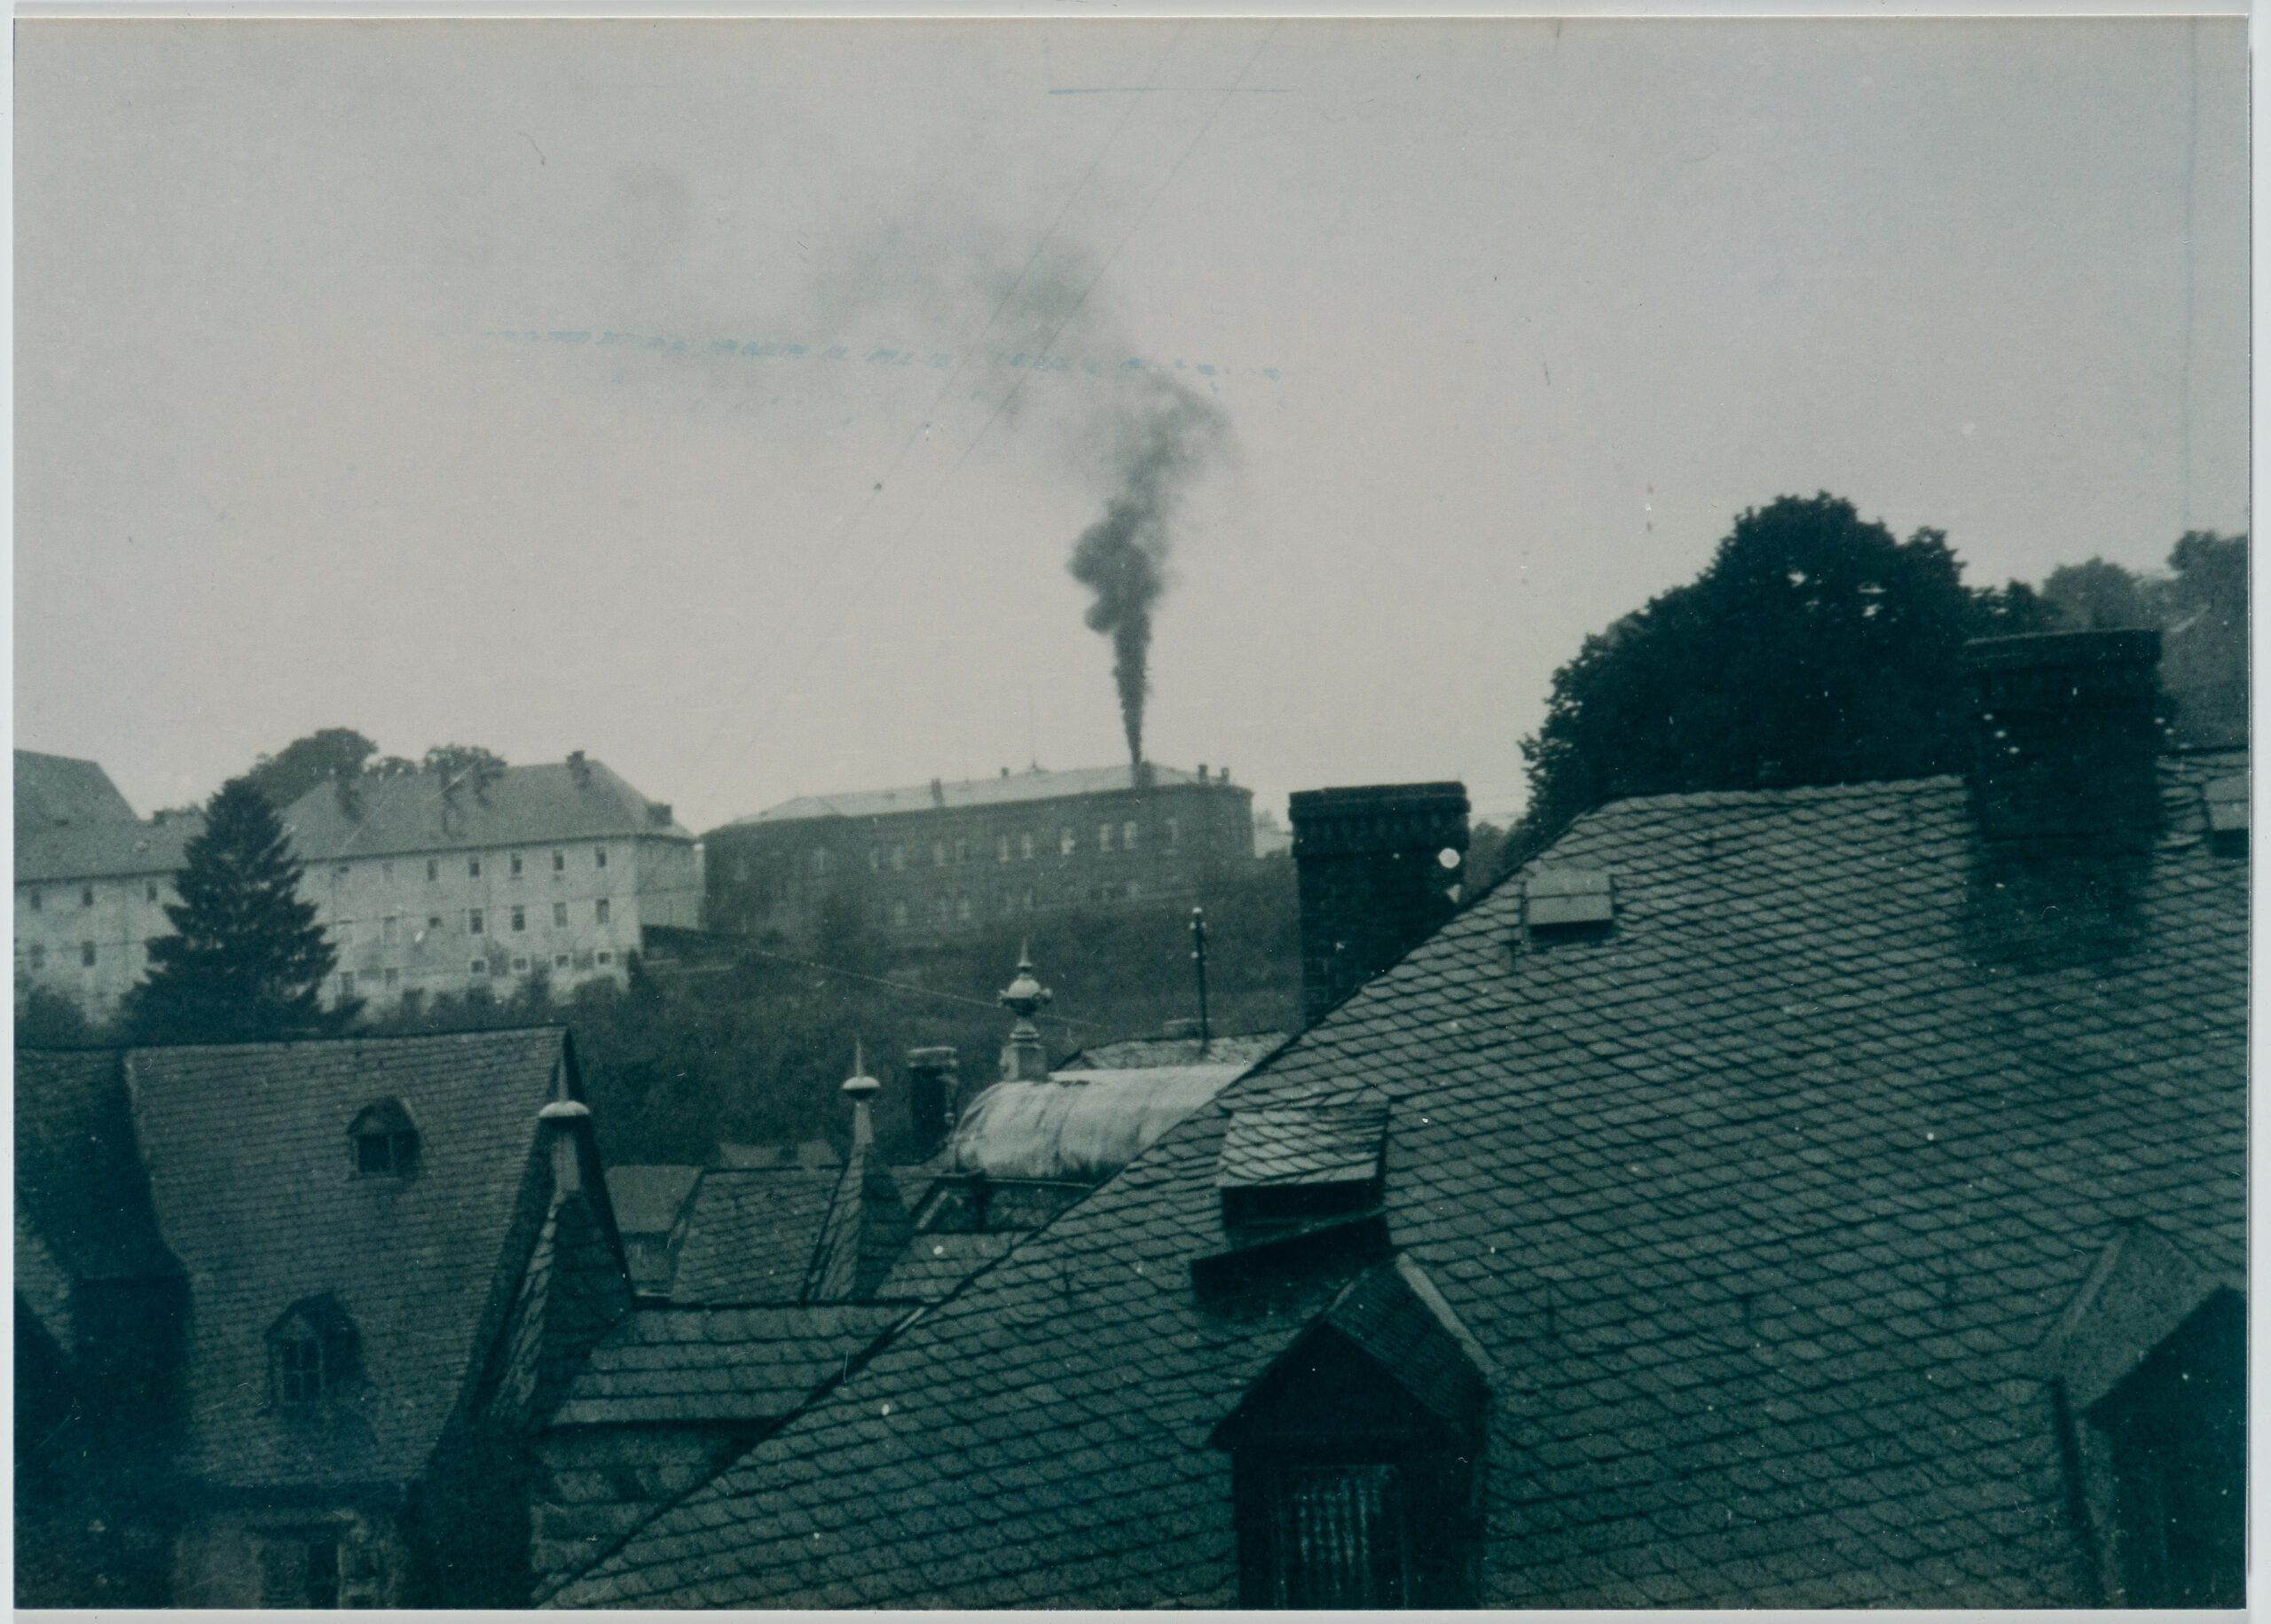 Schwarz-Weiß-Foto der Anstalt Hadamar aus einiger Entfernung. Im Vordergrund sind Dächer einiger Gebäude aus Hadamar zu sehen. Aus dem Schornstein der Anstalt zieht eine schwarze Rauchsäule Richtung Himmel.